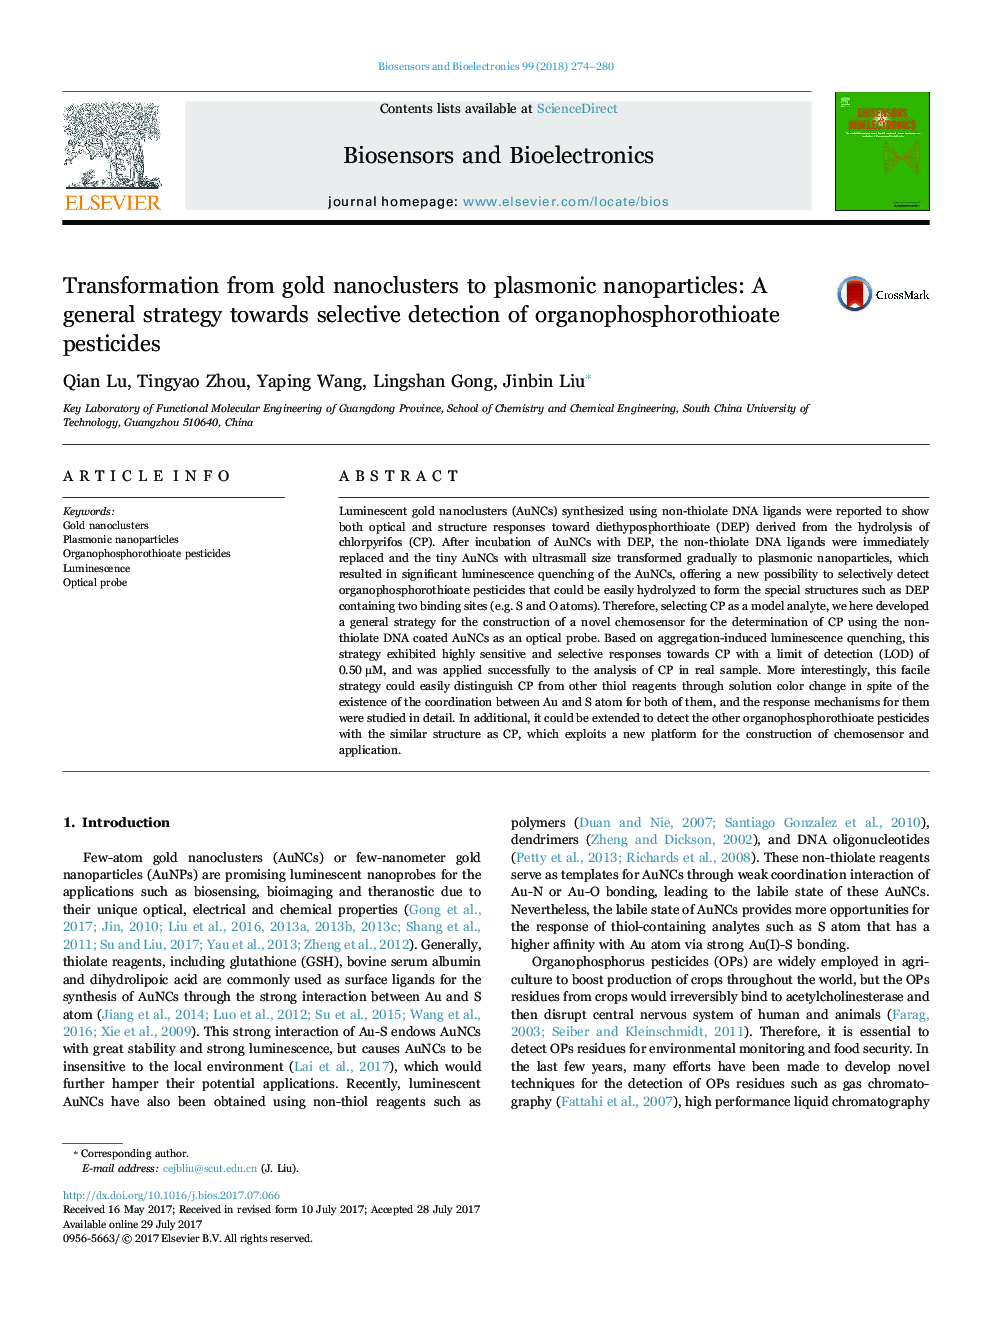 تبدیل از نانوکیلرهای طلای به نانوذرات پلاسمونی: یک استراتژی کلی نسبت به شناسایی انتخابی از سموم دفع آفات فسفروتویوات